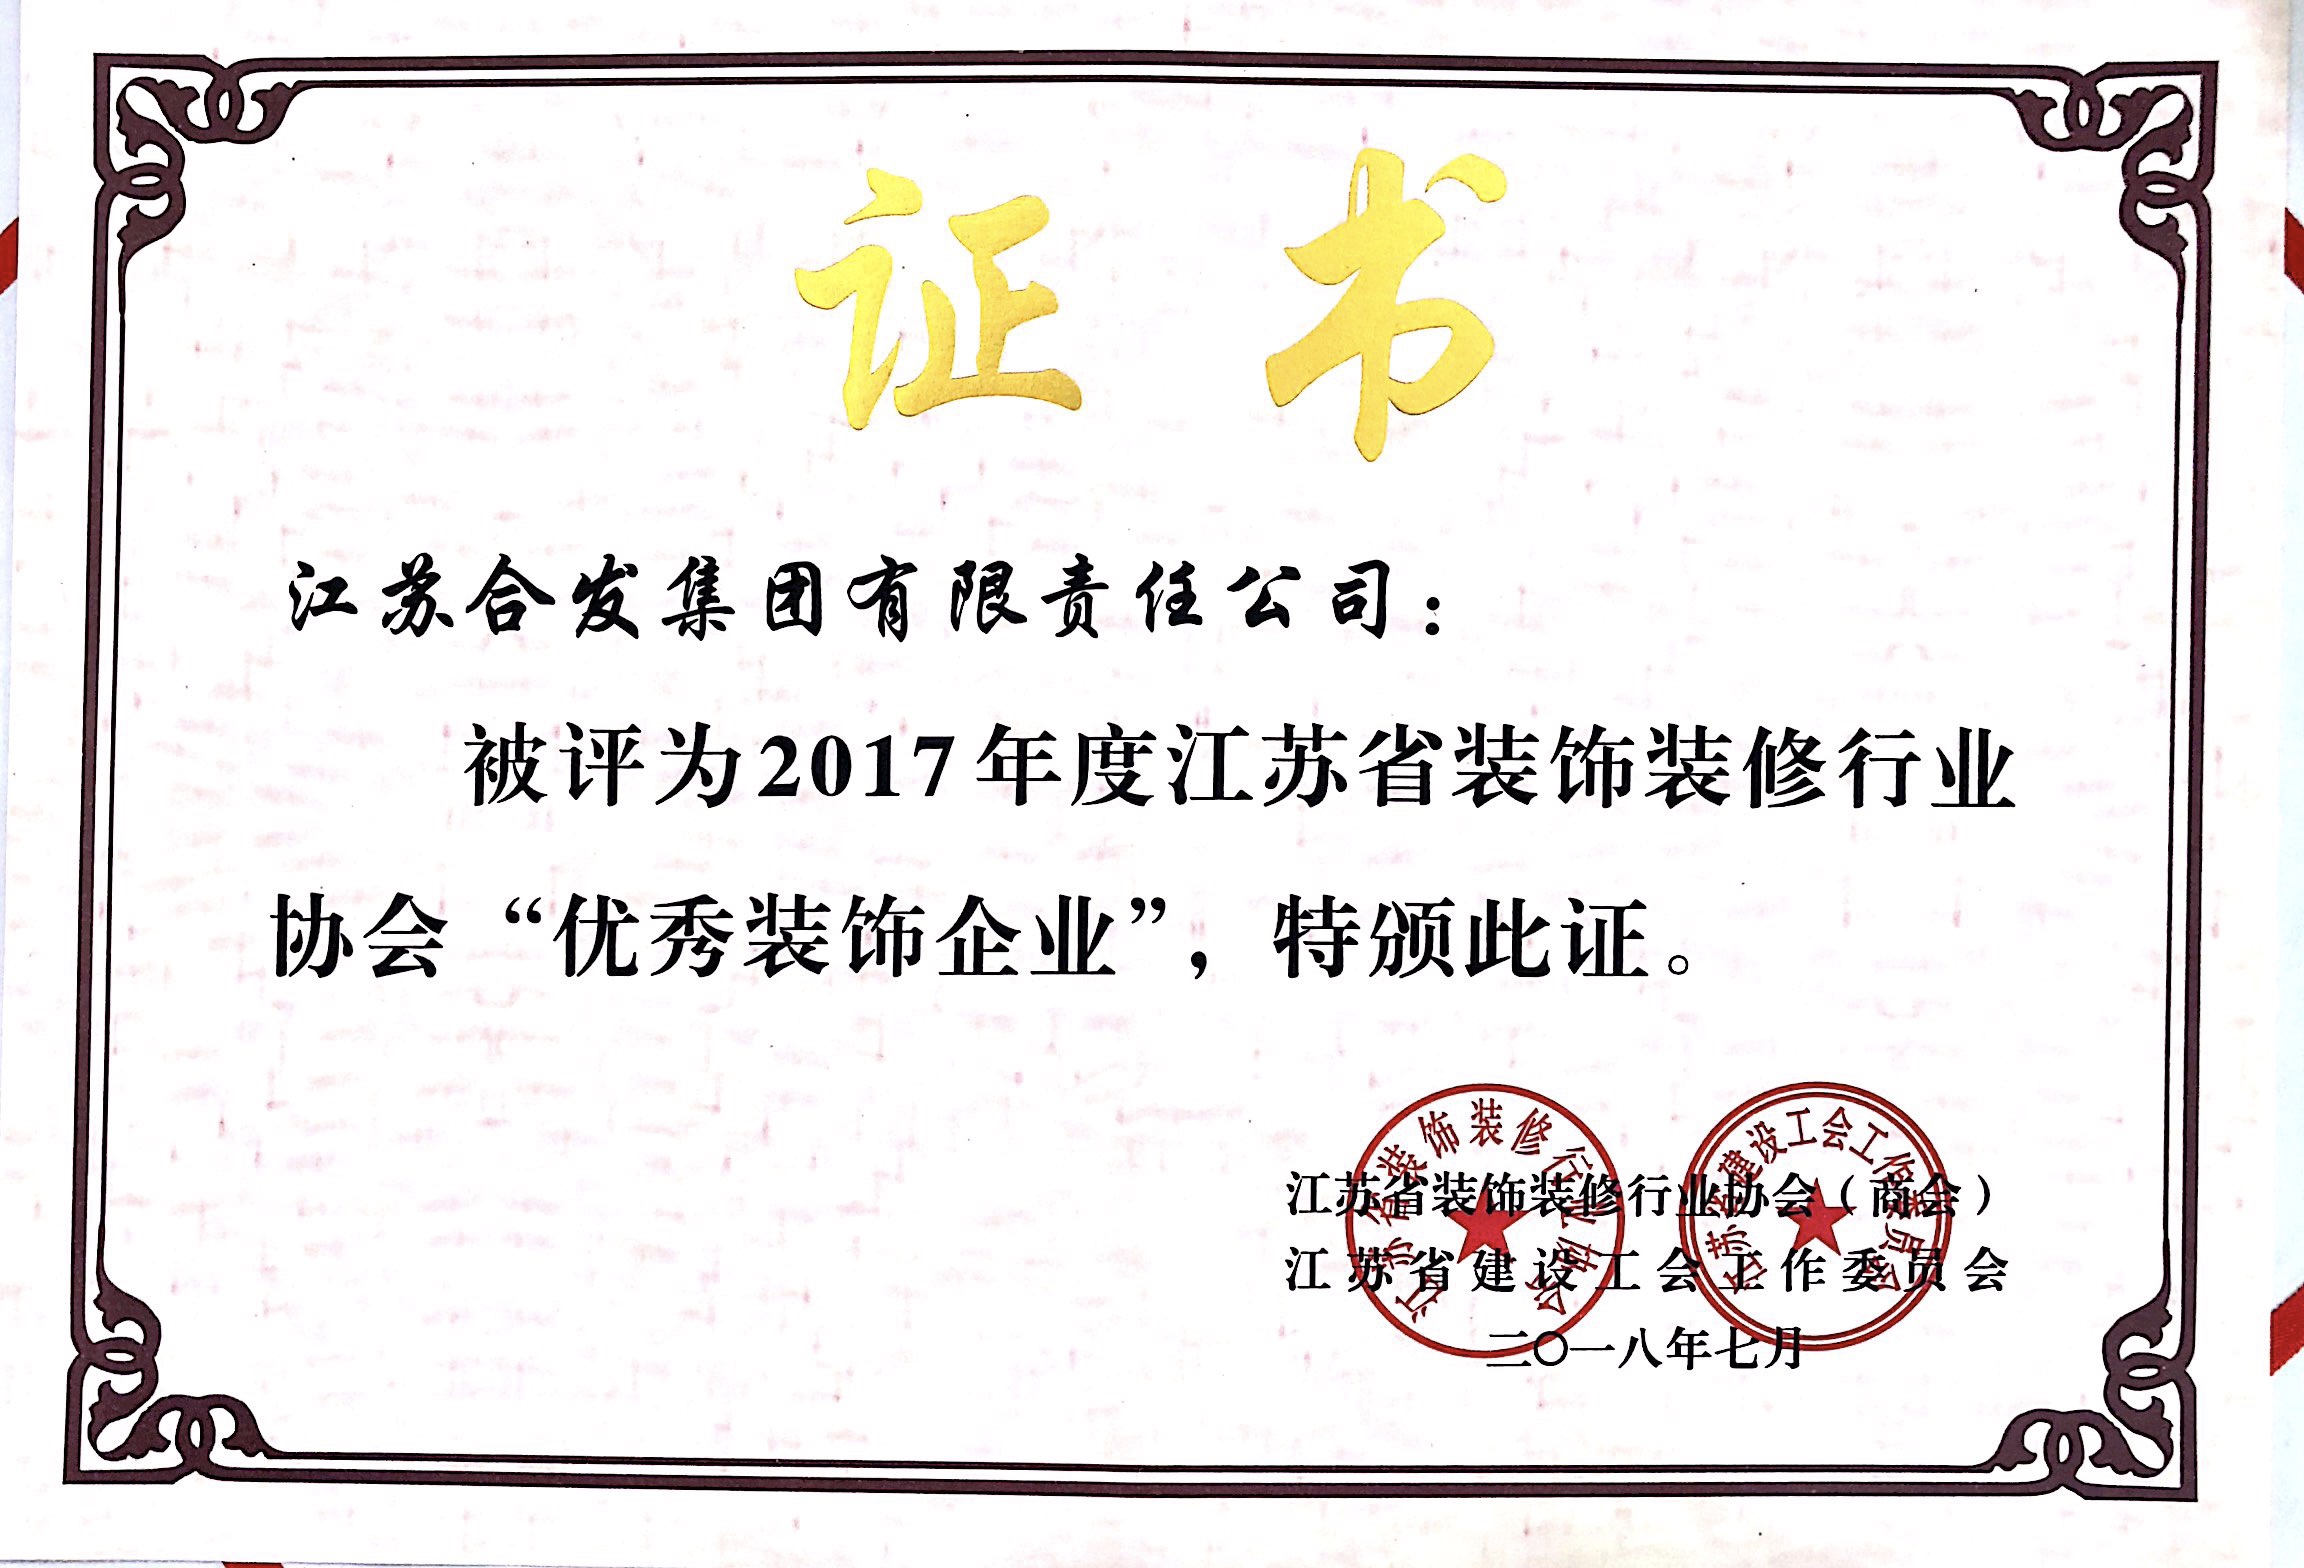 2017年度江蘇省裝飾裝修行業協會優秀裝飾企業